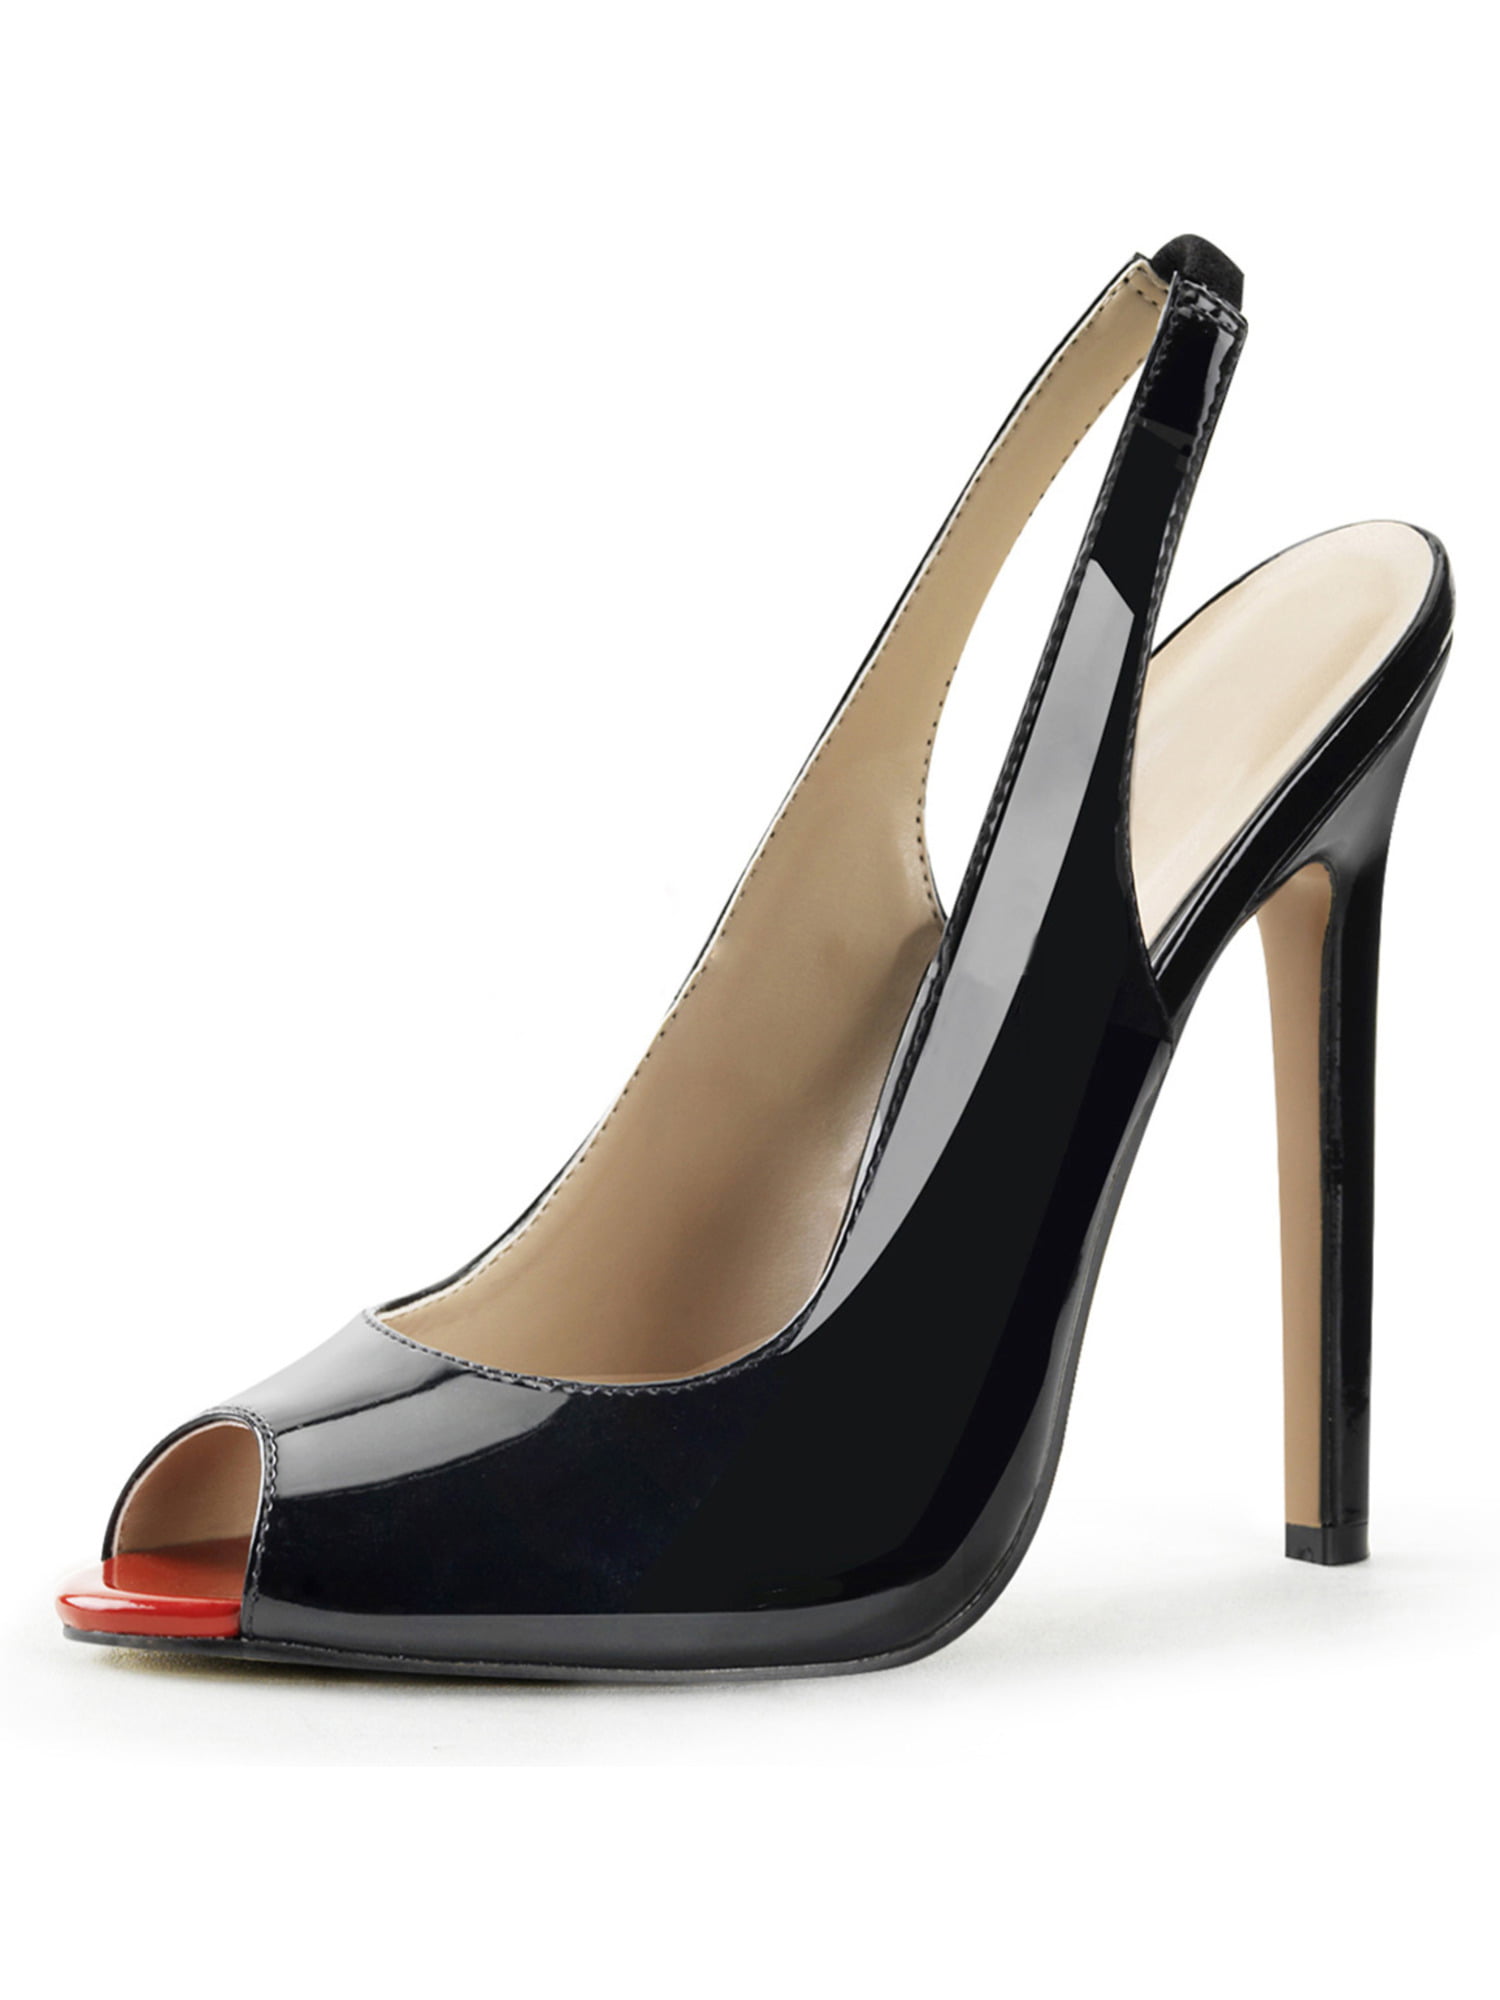 black patent peep toe slingback heels